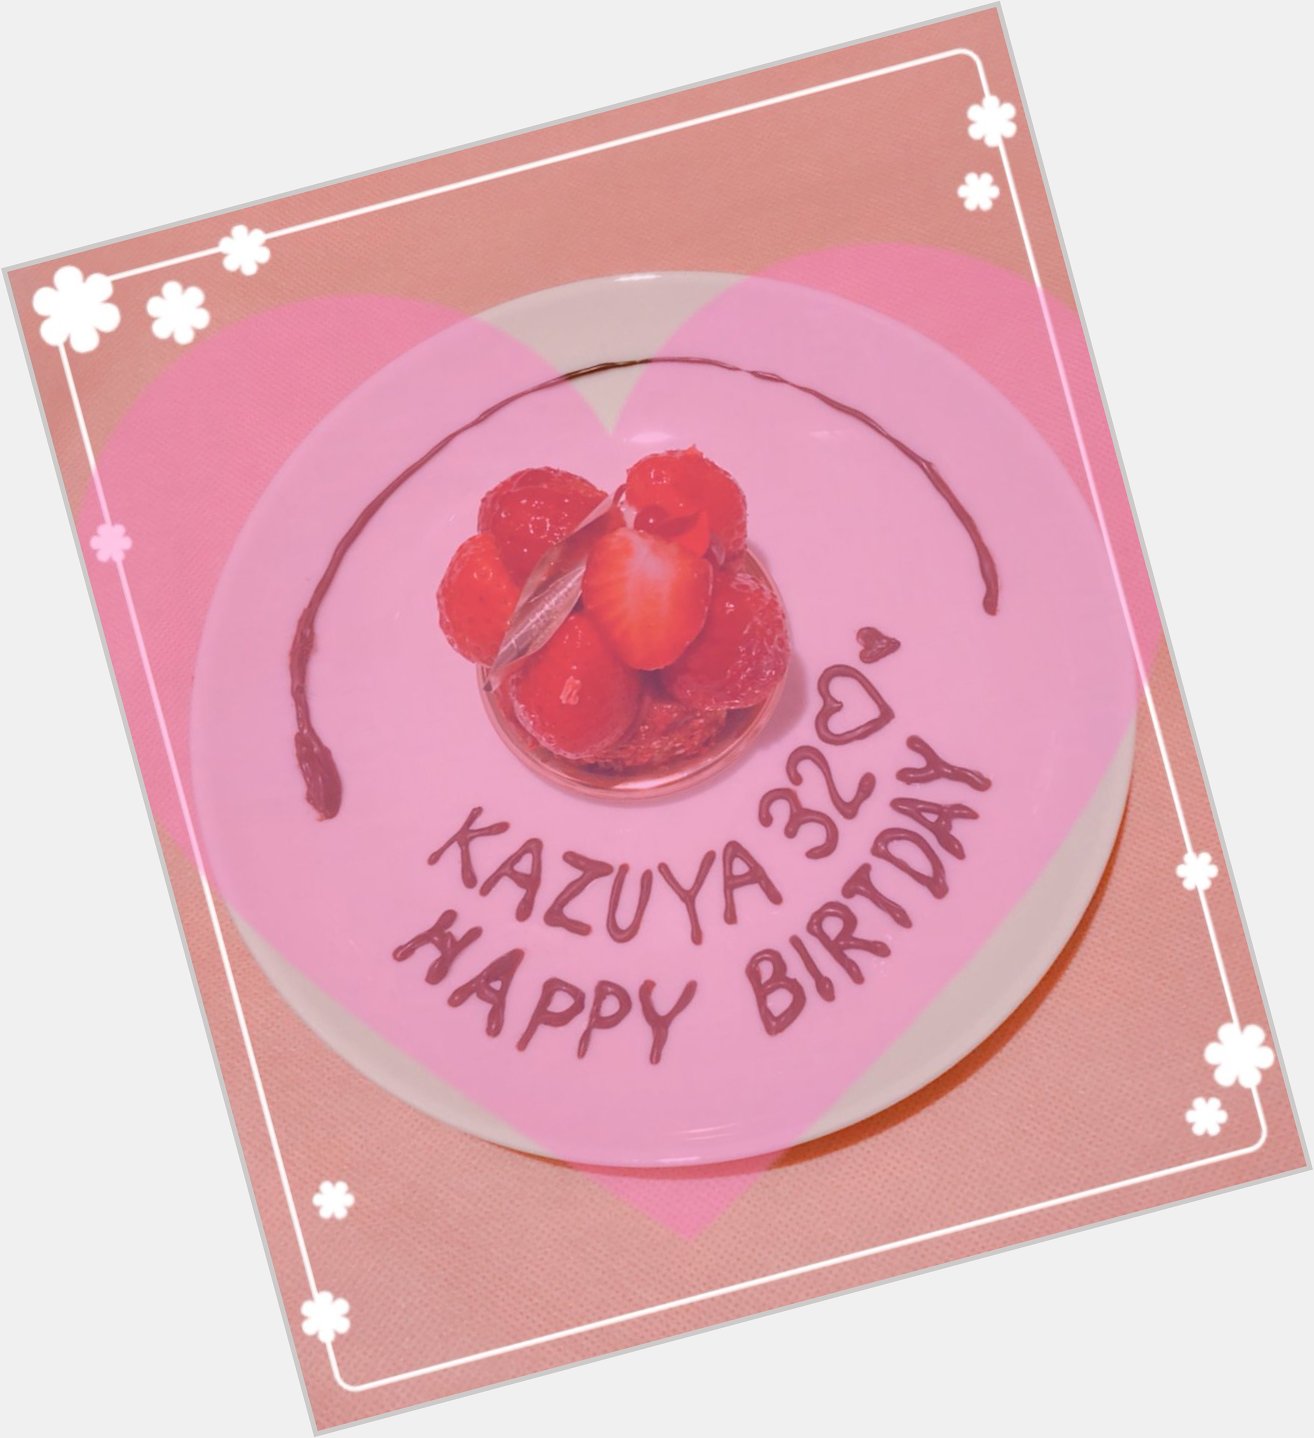          Happy birthday
       Kazuya Kamenashi             